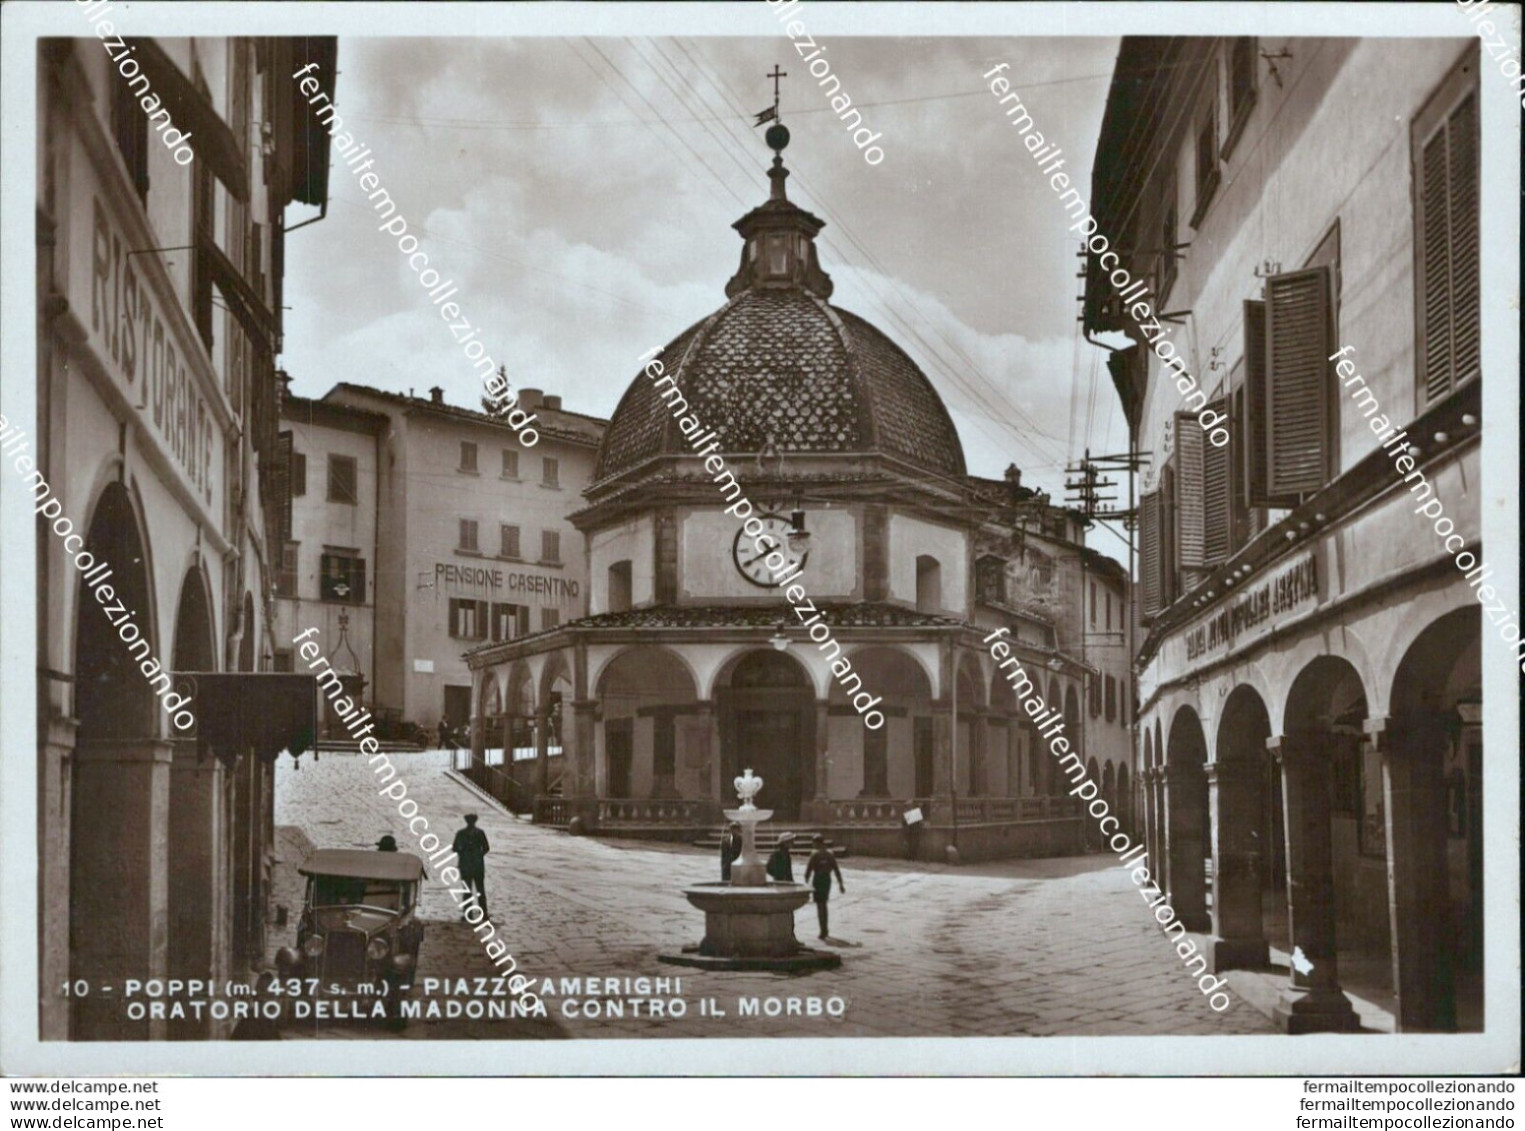 An672 Cartolina Poppi Piazza Amerighi Oratorio Della Madonna Contro Il Morso - Arezzo